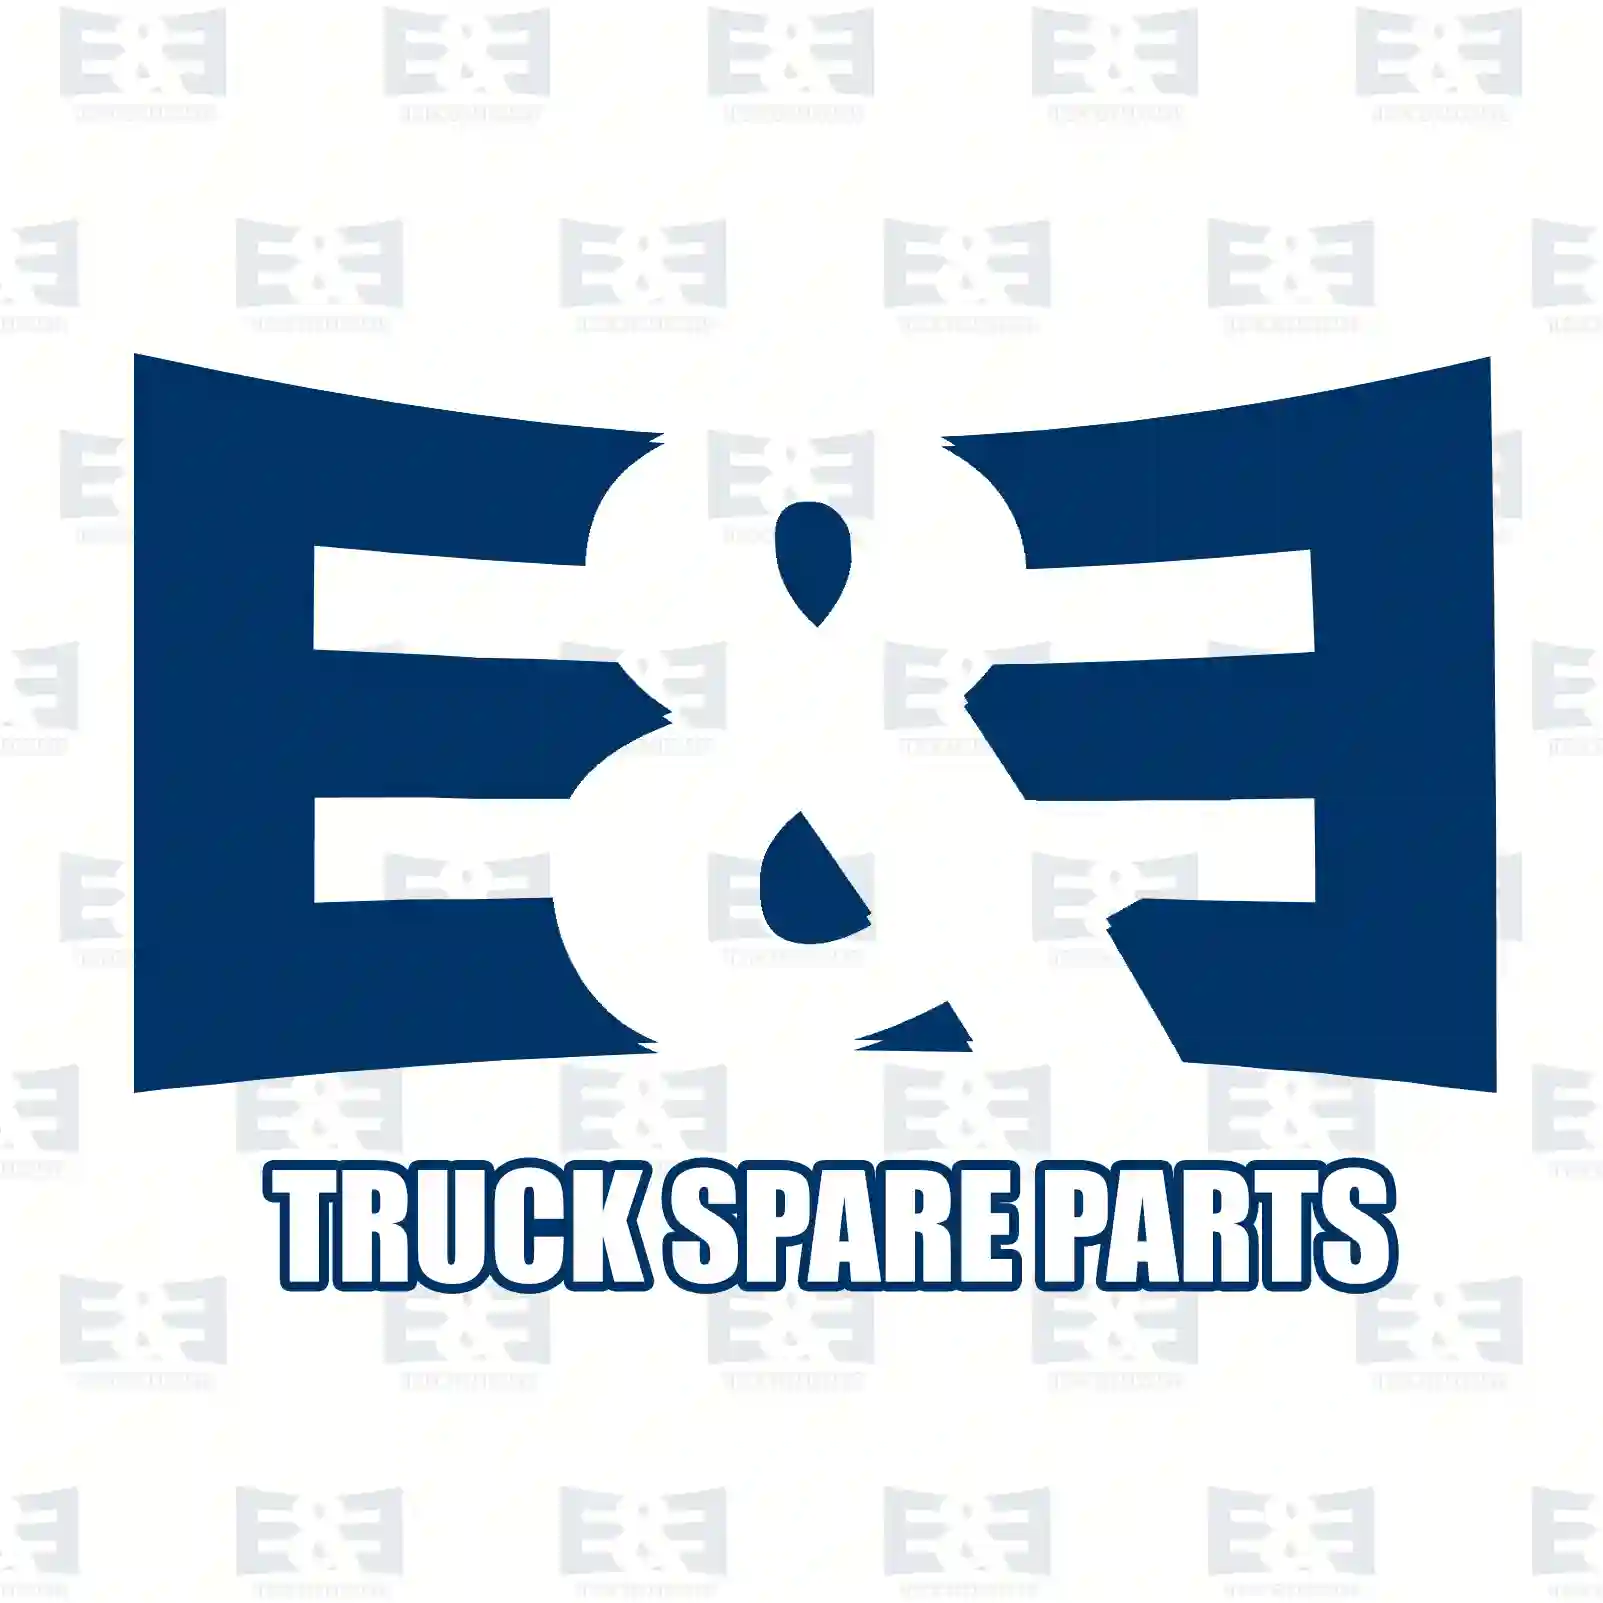 Propeller shaft, 2E2276726, 99472858, 9947286 ||  2E2276726 E&E Truck Spare Parts | Truck Spare Parts, Auotomotive Spare Parts Propeller shaft, 2E2276726, 99472858, 9947286 ||  2E2276726 E&E Truck Spare Parts | Truck Spare Parts, Auotomotive Spare Parts